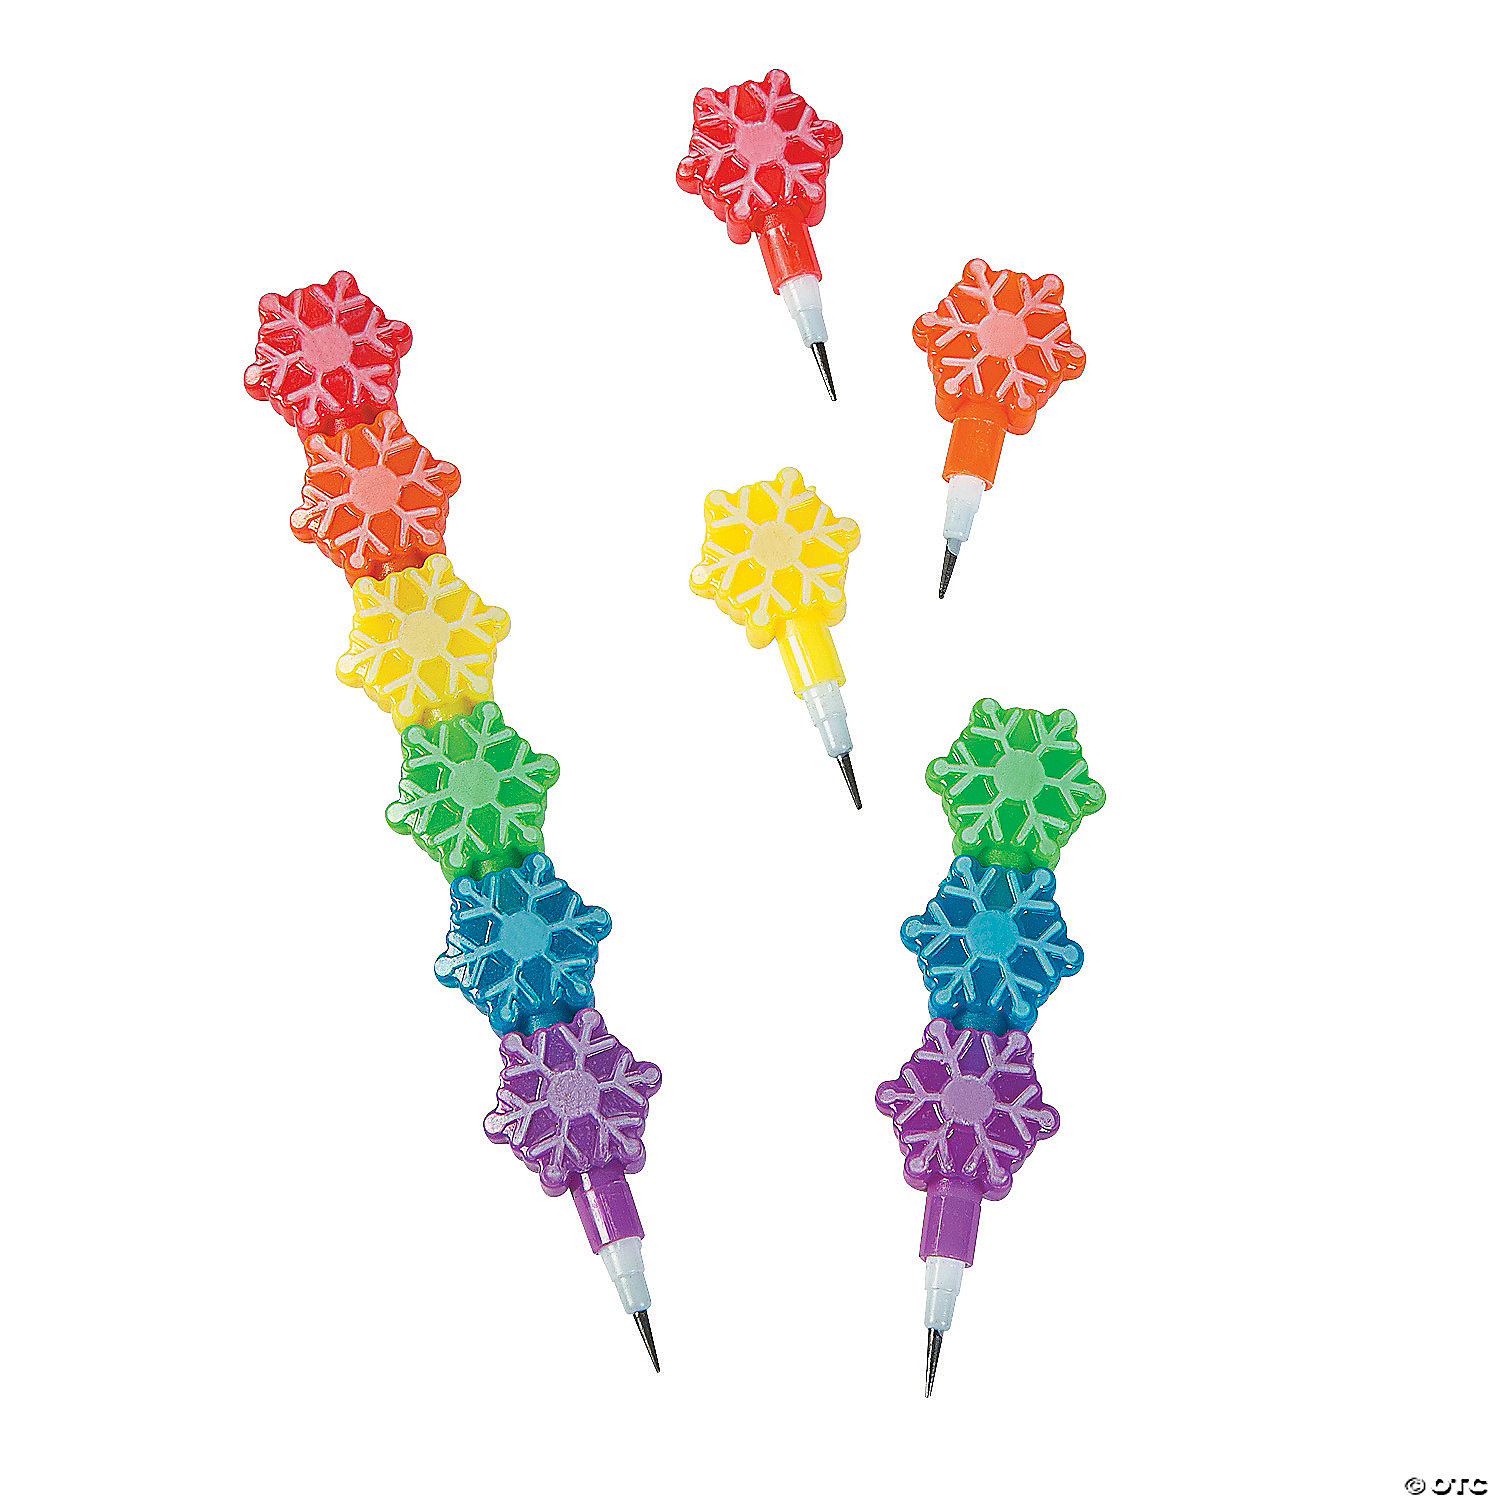 Snowflake Pencils with Pencil Top Eraser - 12 Pc.